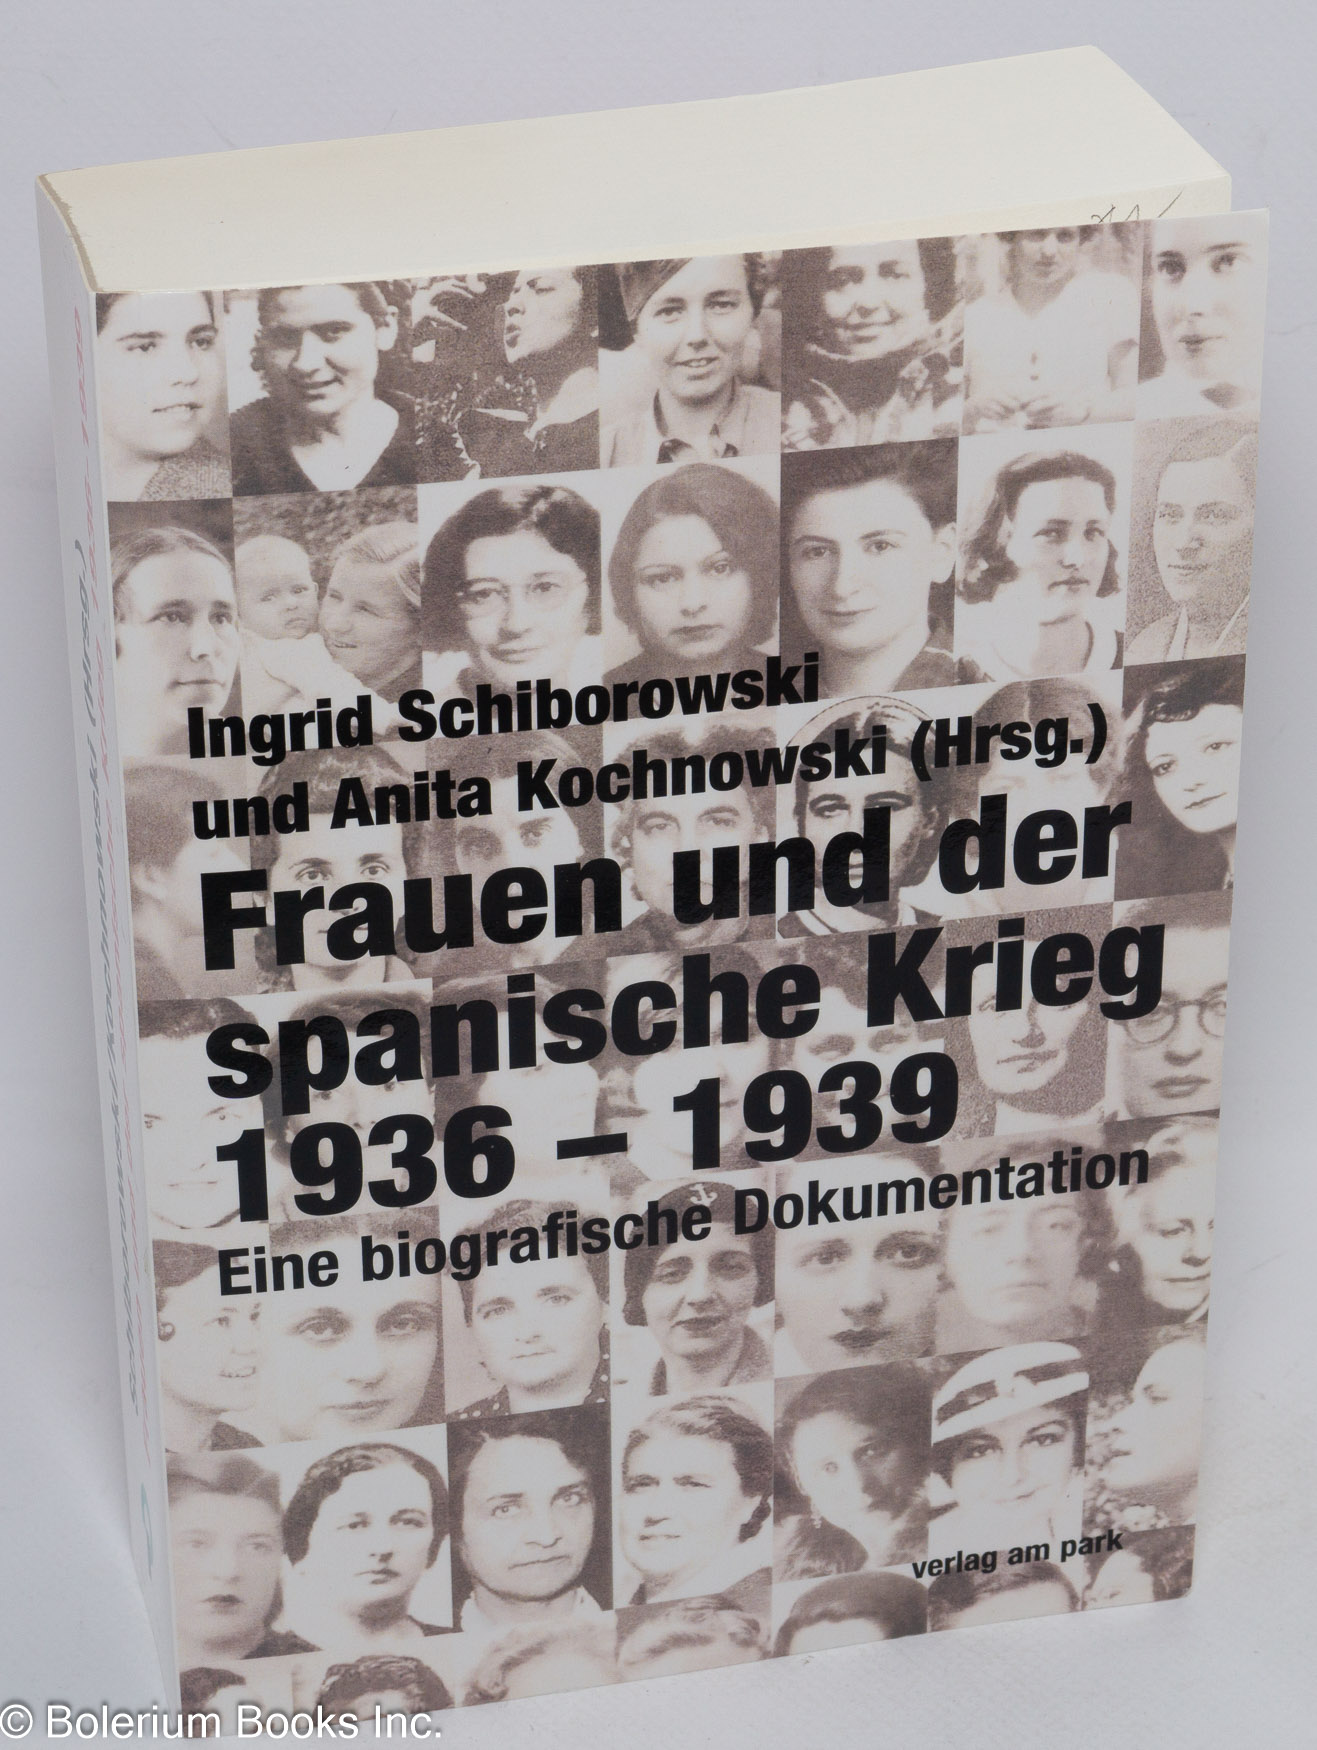 Frauen und der spanische Krieg 1936-1939: eine biografische Dokumentation - Kochnowski, Anita; Ingrid Schiborowski, editors